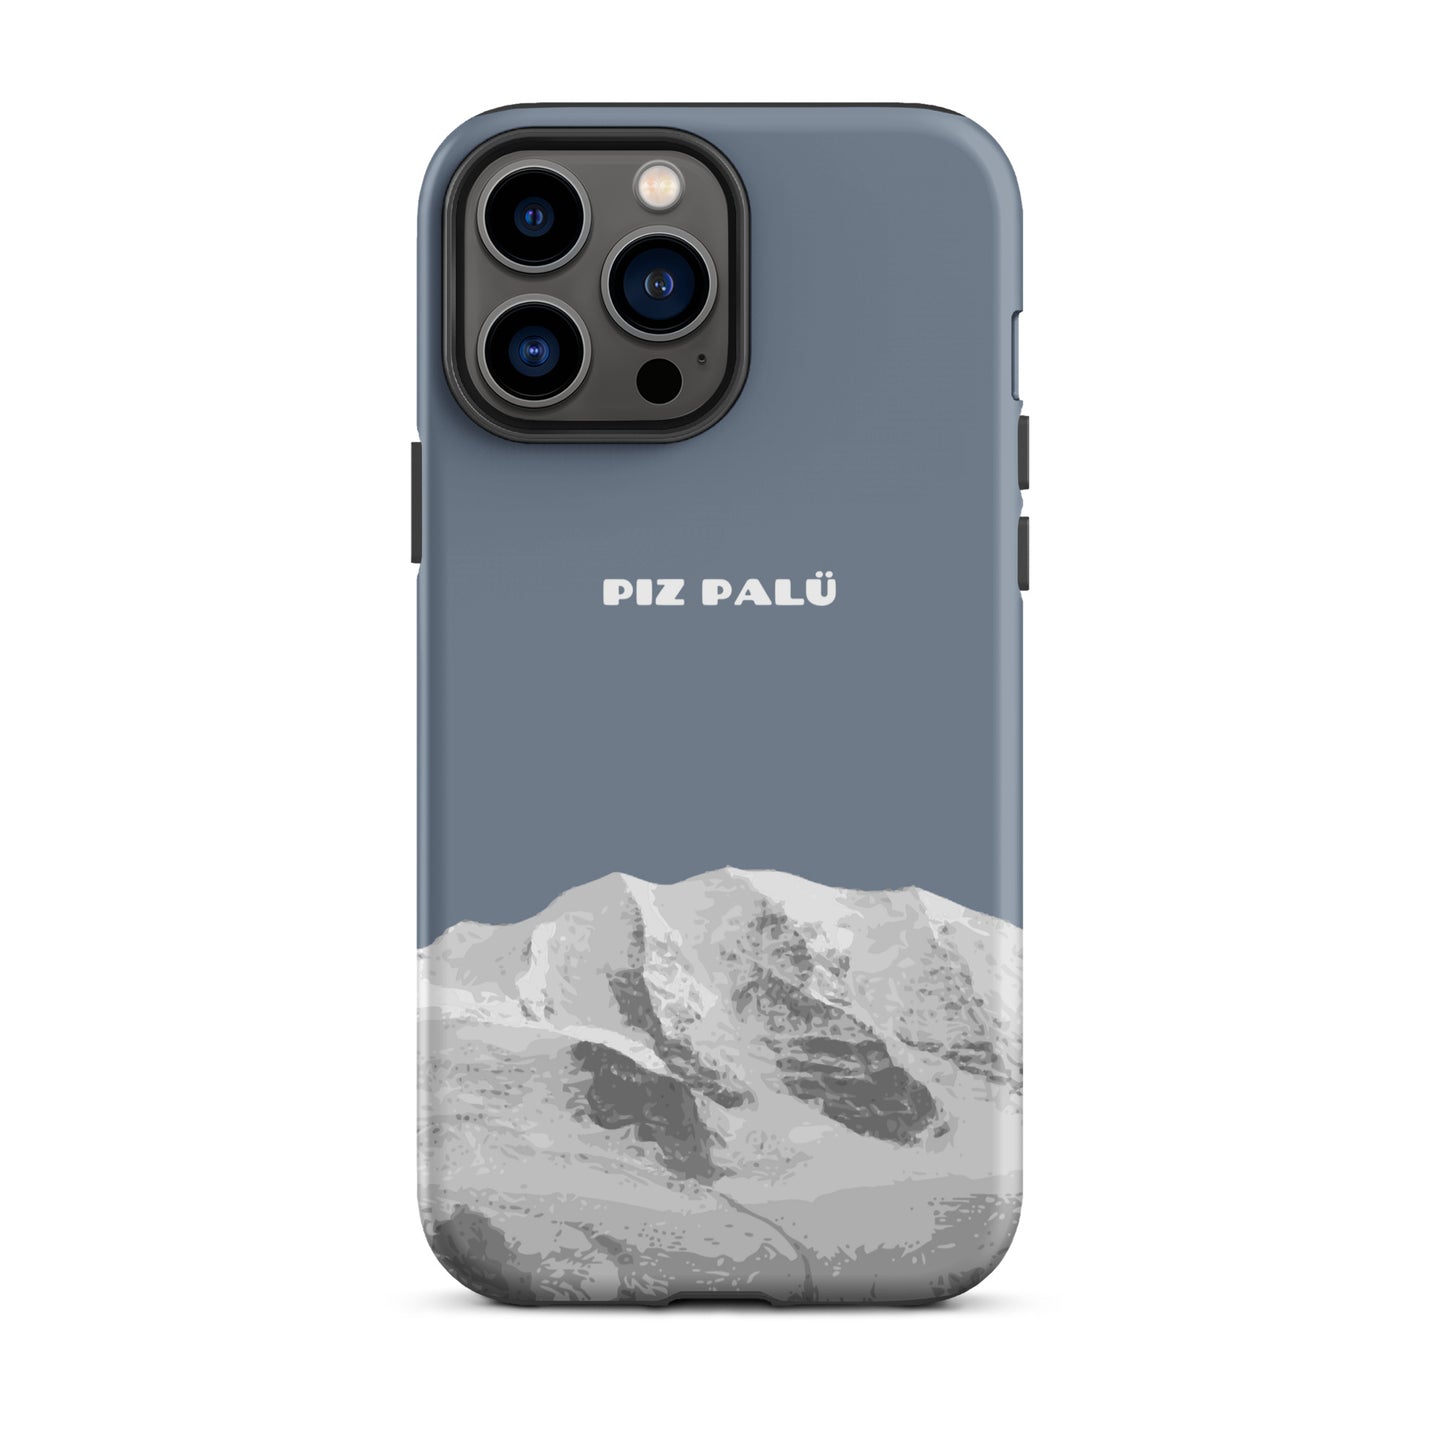 Hülle für das iPhone 13 Pro Max von Apple in der Farbe Schiefergrau, dass den Piz Palü in Graubünden zeigt.